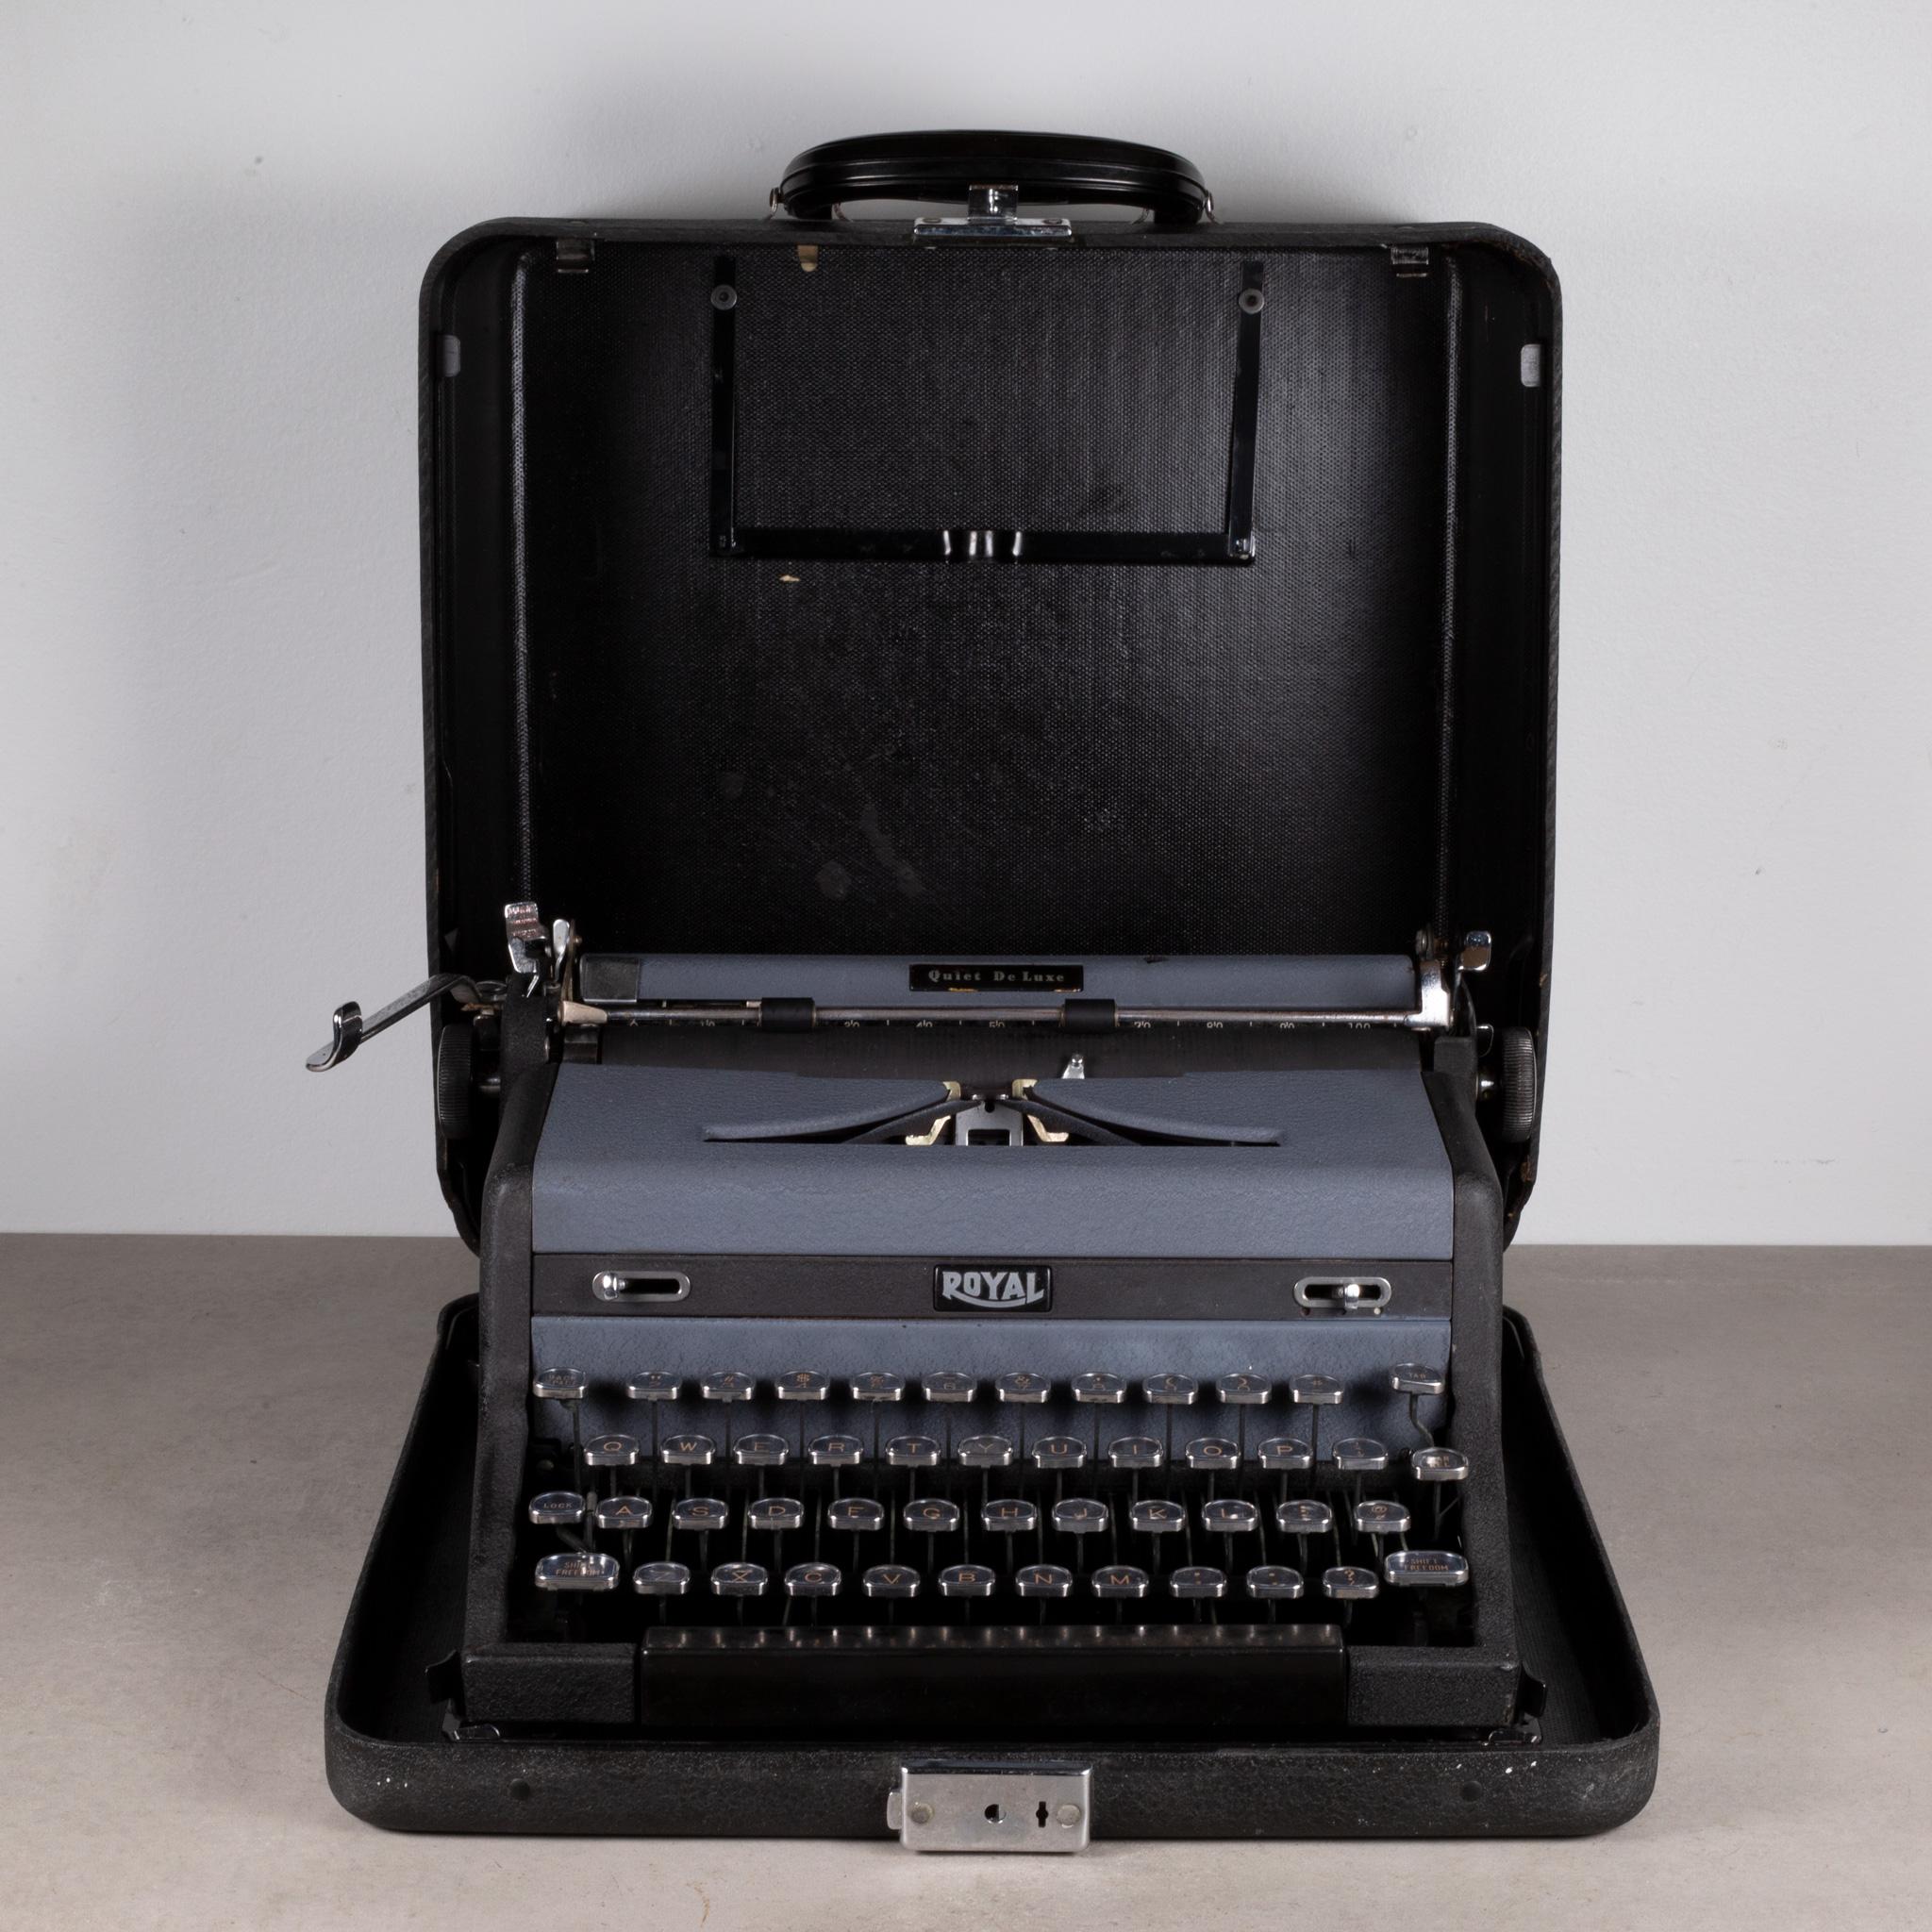 À propos de

Une machine à écrire vintage Royal Quiet DeLuxe en finition crinkle deux tons. Coque redessinée par Henry Dreyfuss, coque carrée, grise et noire avec inserts chromés ovales pour les leviers avant. Sur cette machine à écrire, les